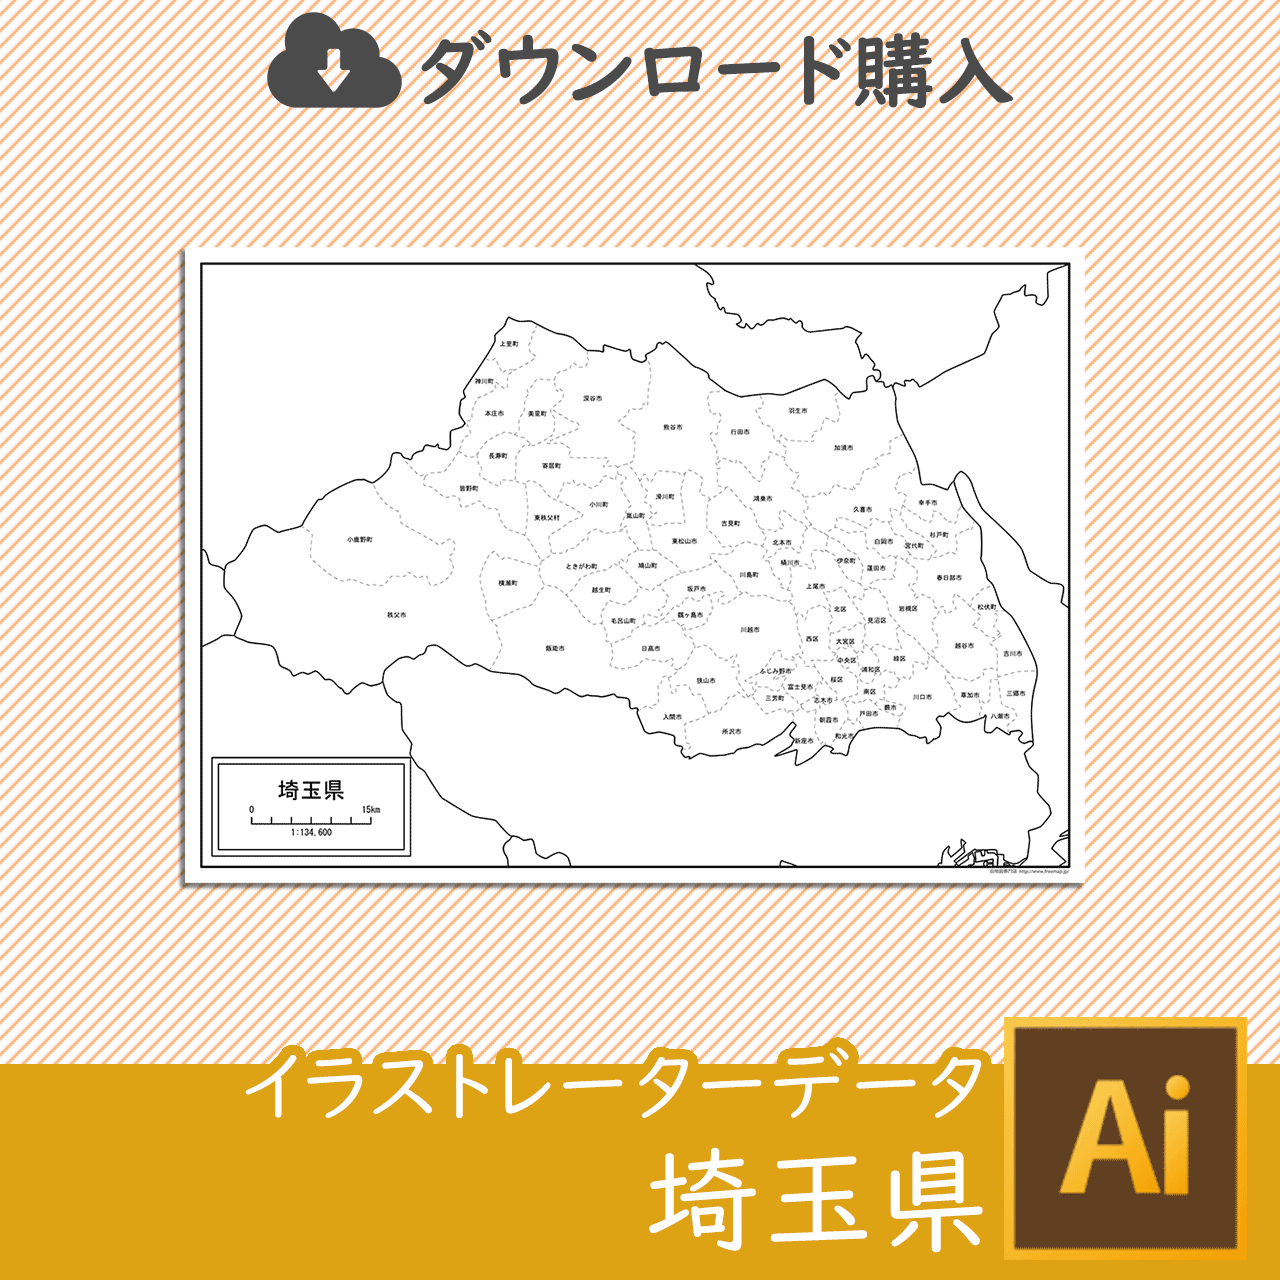 埼玉県のaiデータのサムネイル画像